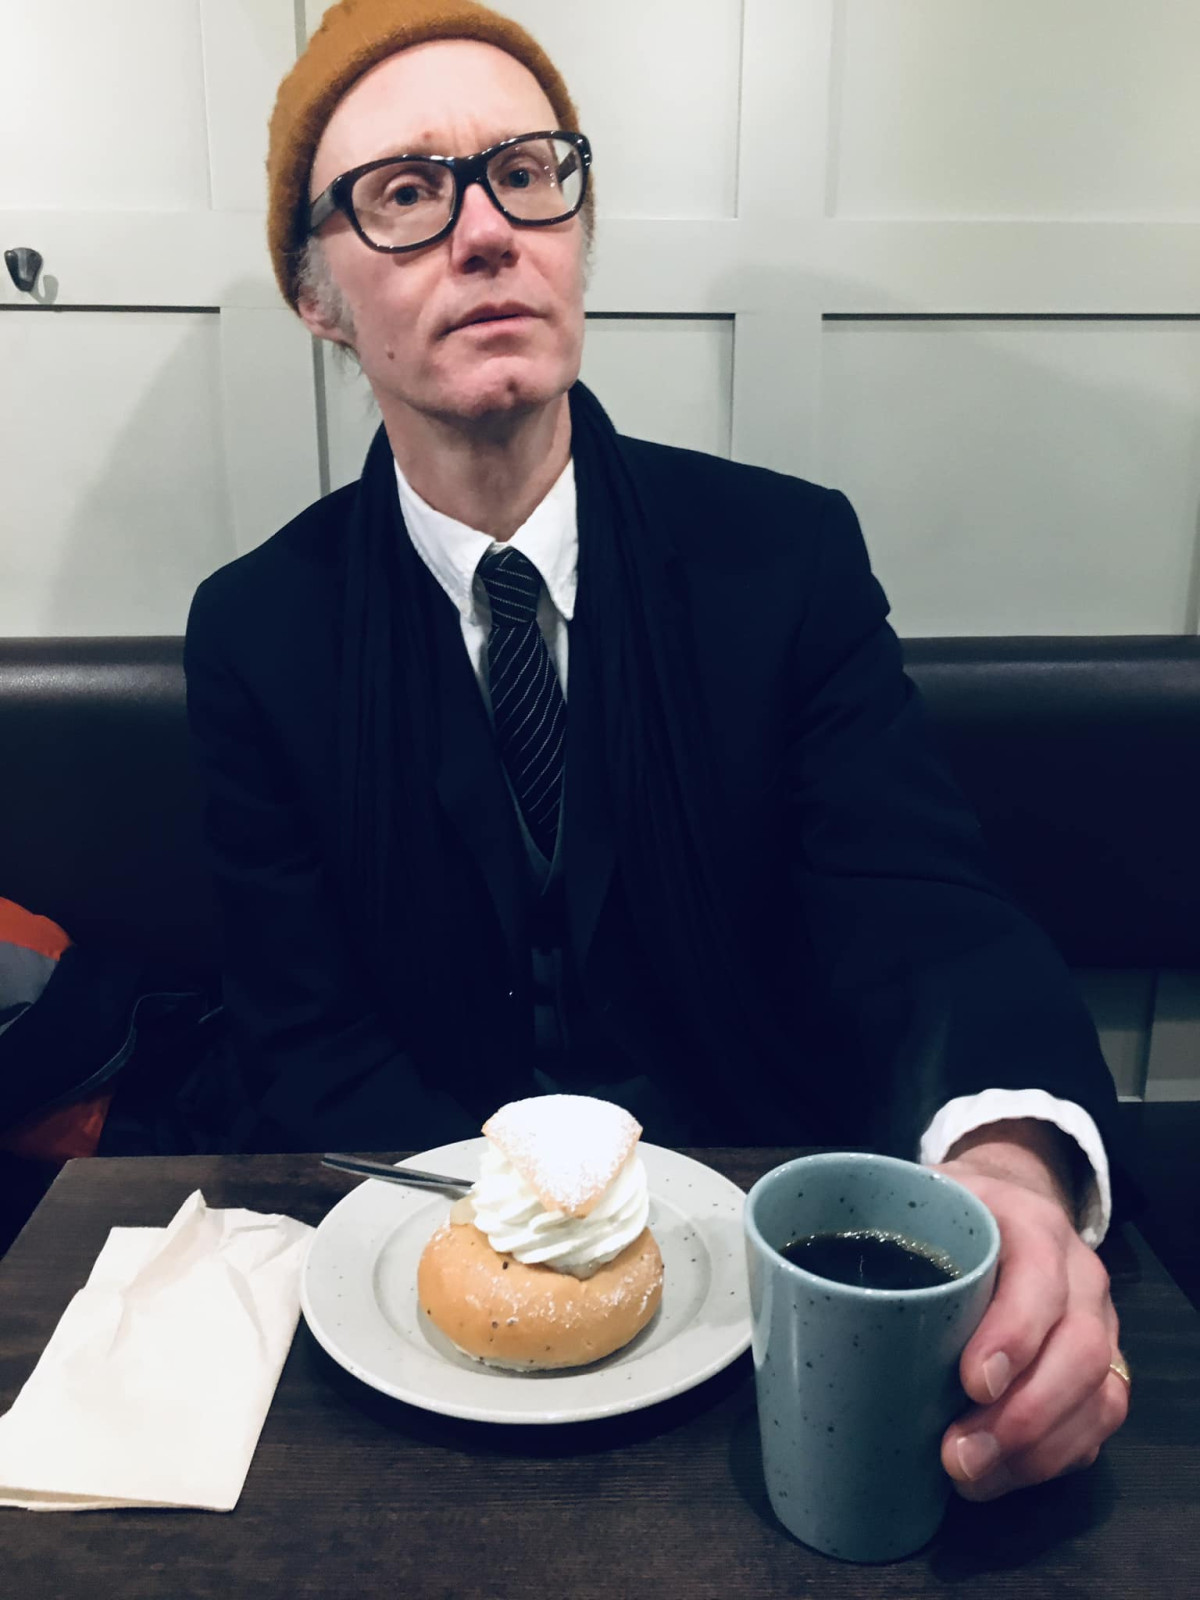 Kostymklädd man vid ett kafébord med kaffekopp och semla.